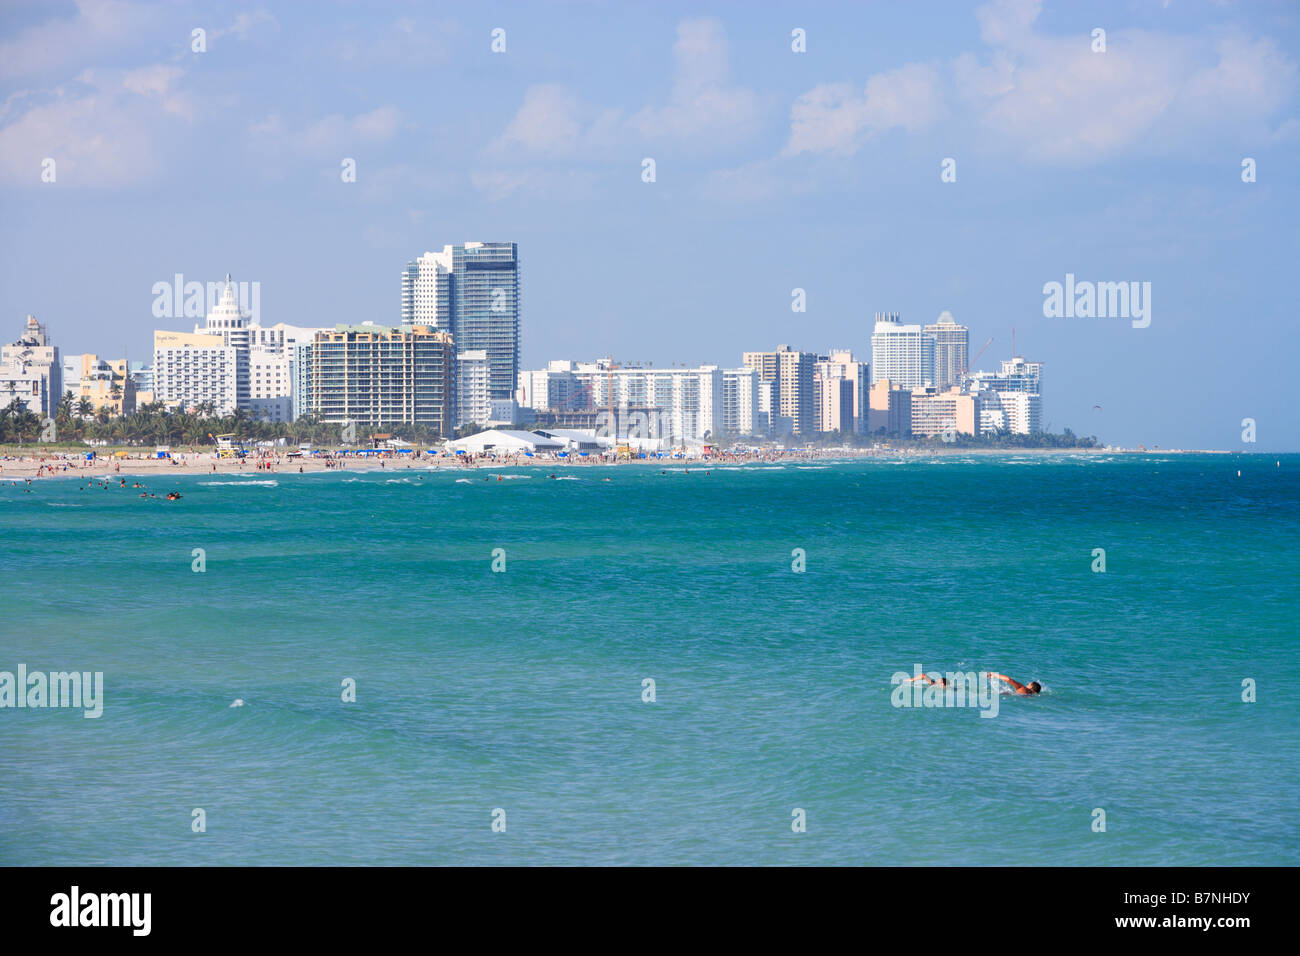 General view of Miami Beach, Florida. Stock Photo